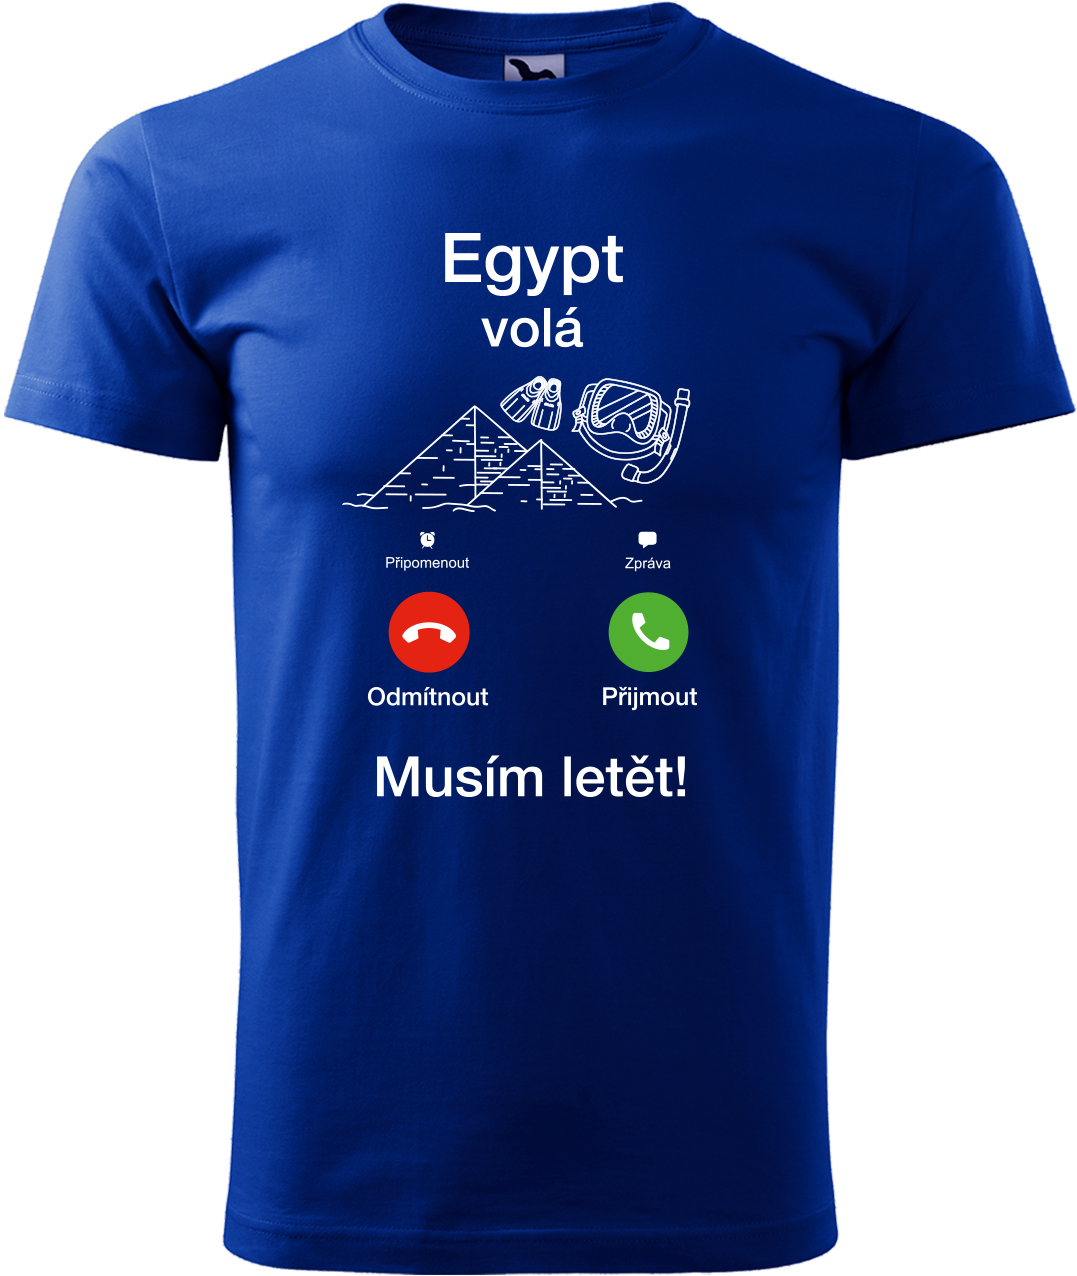 Pánské cestovatelské tričko - Egypt volá - musím letět! Velikost: M, Barva: Královská modrá (05), Střih: pánský